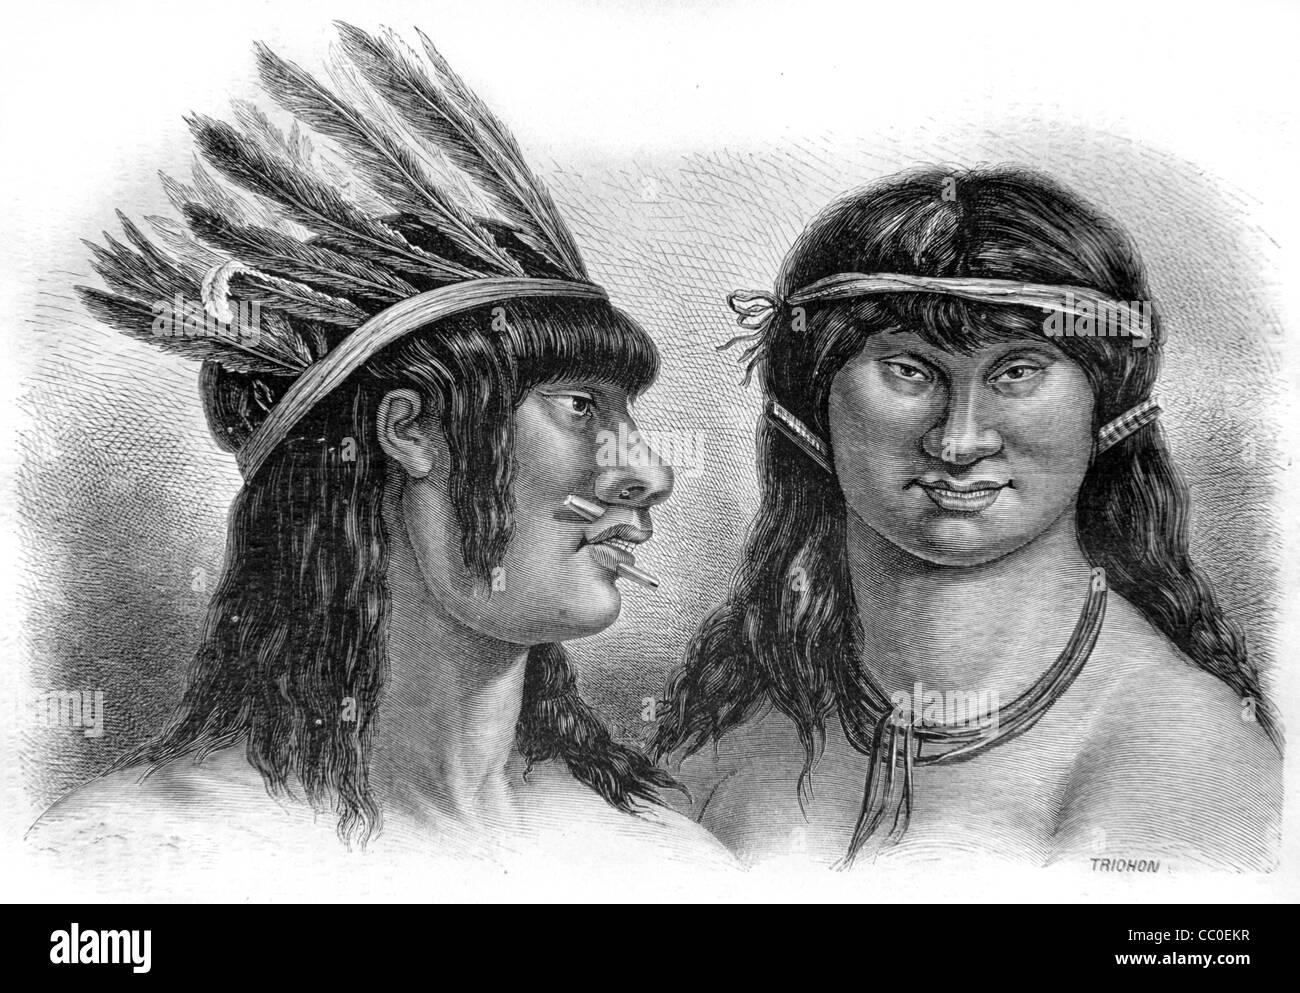 Porträts von ein paar Impetiniri Indianer oder indigene Indianer mit Kopfkleid & Piercings, Peru, Südamerika. 1864 Gravieren oder Illustration Stockfoto